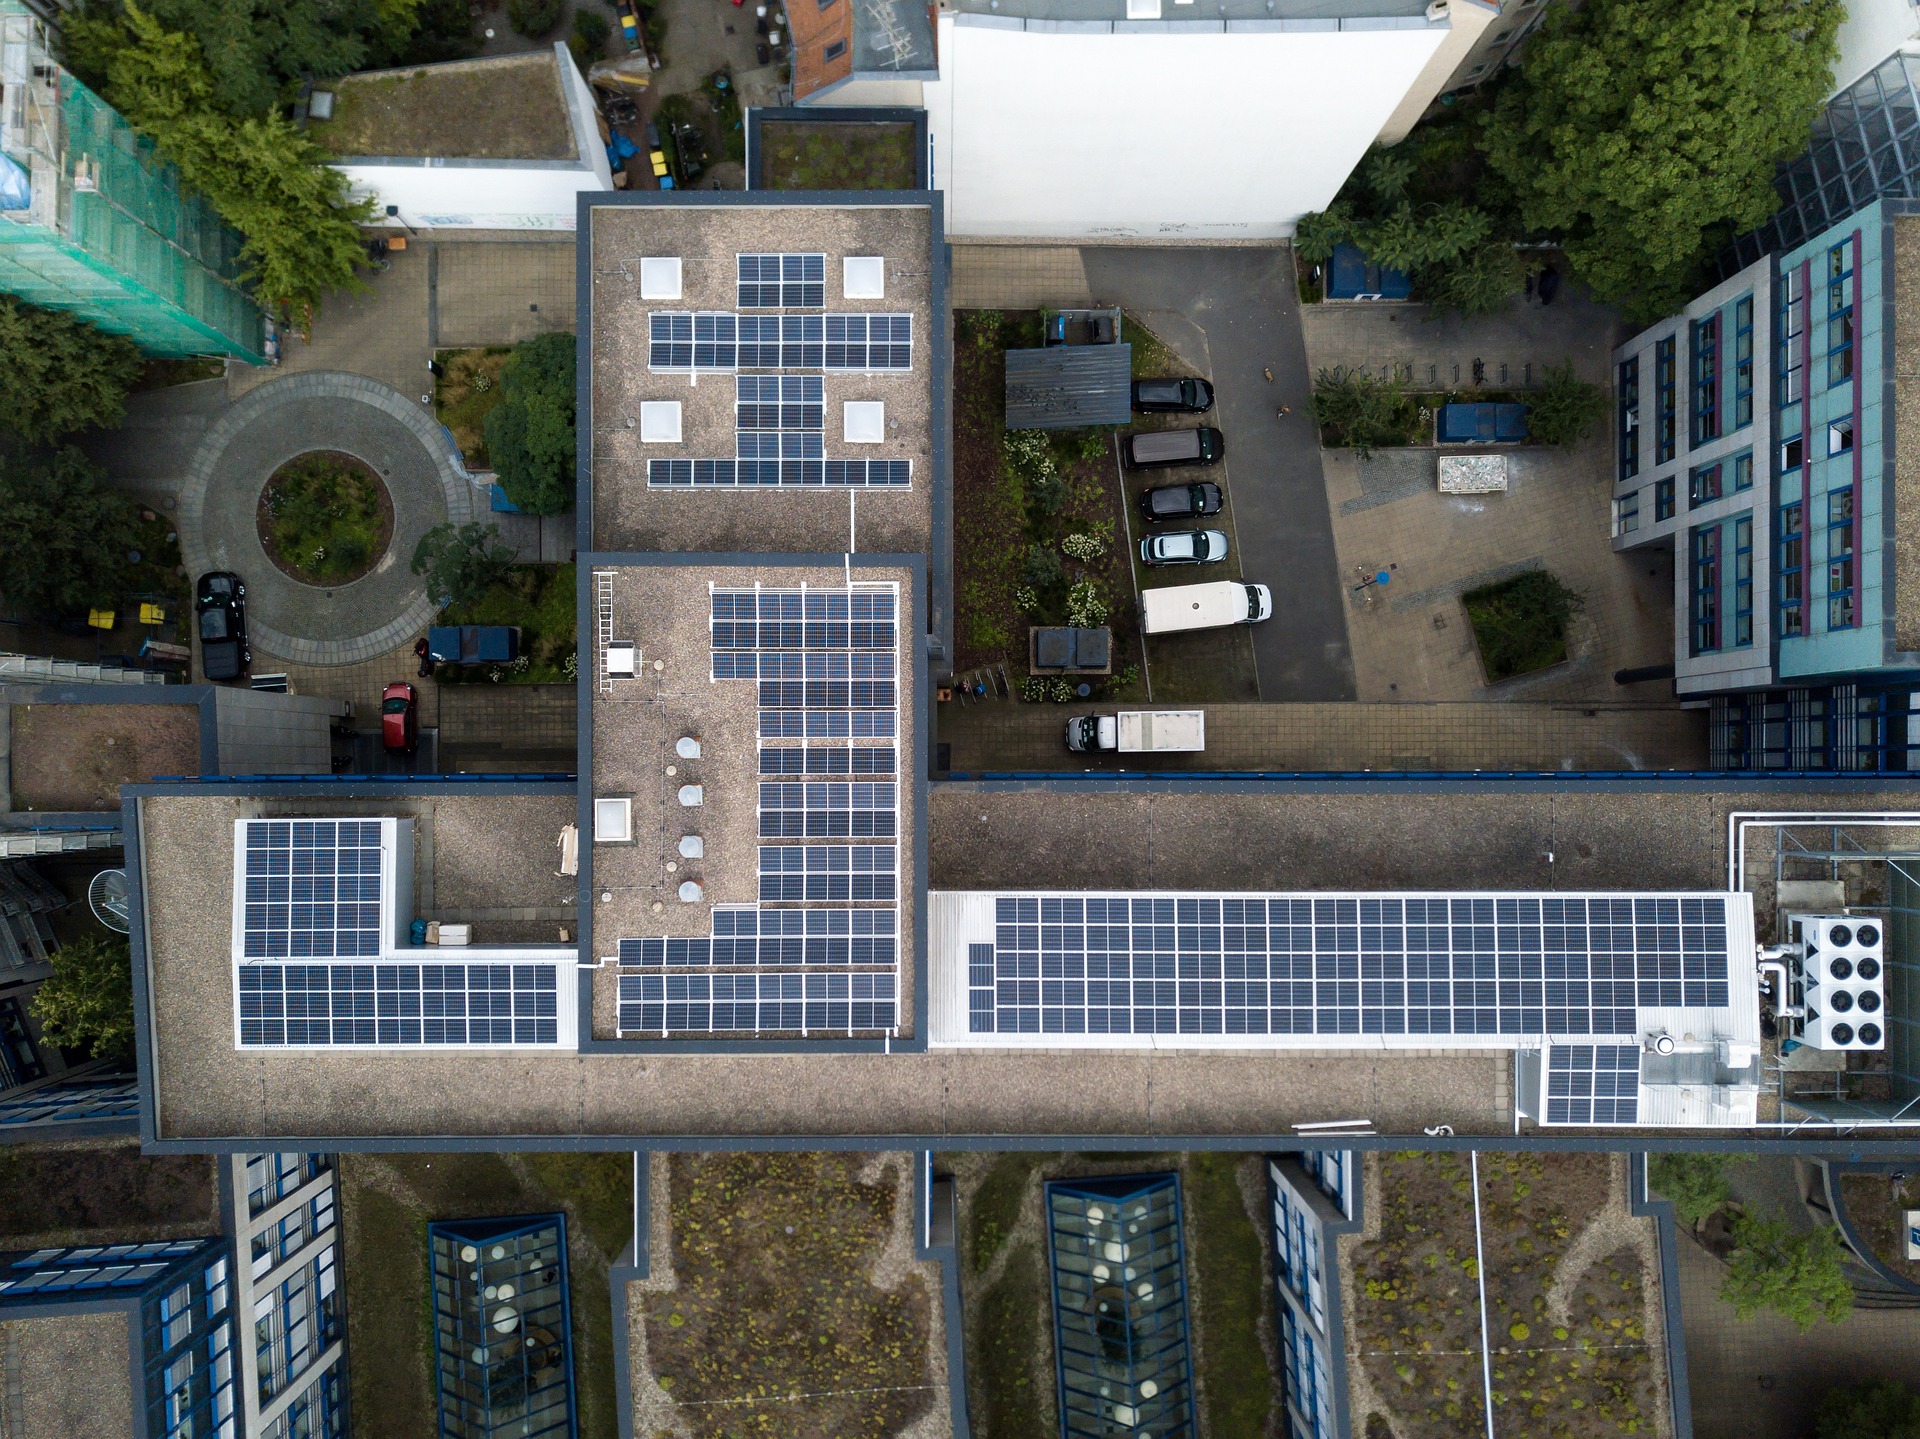 Imagen aérea de un edificio en la ciudad con instalación de paneles solares para autogeneración de energía